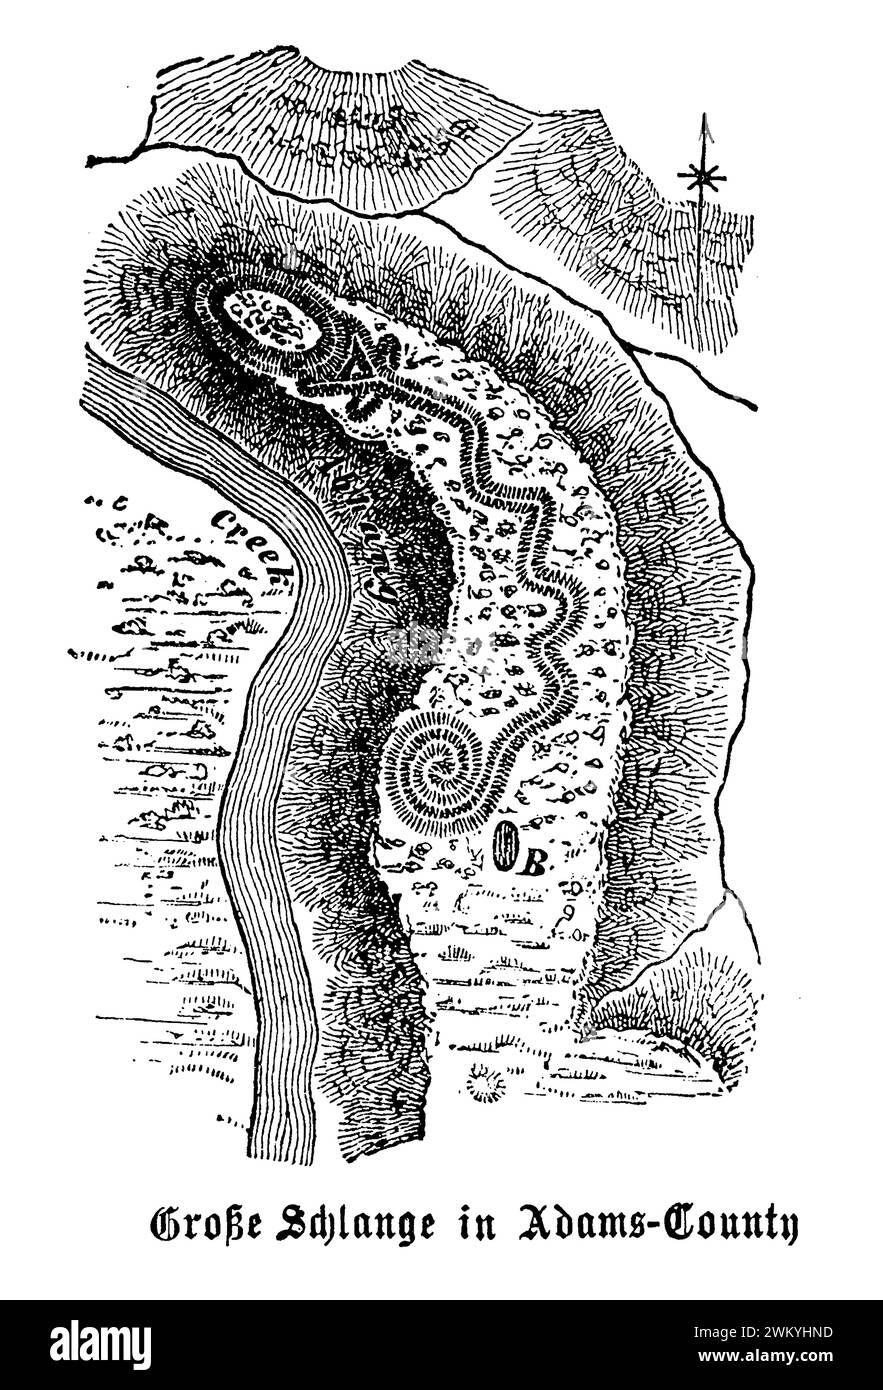 Der Great Serpent Mound im Adams County bei Peebles, Ohio, ist einer der bemerkenswertesten und geheimnisvollsten prähistorischen Bildhügel Nordamerikas. Dieses antike Erdwerk, geformt wie eine Schlange mit einem gewickelten Schwanz und einem offenen Mund, erstreckt sich über 1.348 Meter Länge und variiert in der Höhe von 1 bis 3 Fuß. Es wird angenommen, dass es von den indigenen Völkern der Adena-Kultur um 1000 v. Chr. bis 300 n. Chr. errichtet wurde, obwohl spätere Studien darauf hindeuten, dass die Fort Ancient Culture (1000-1650 n. Chr.) für ihre Entstehung oder Modifikation verantwortlich gewesen sein könnte Stockfoto